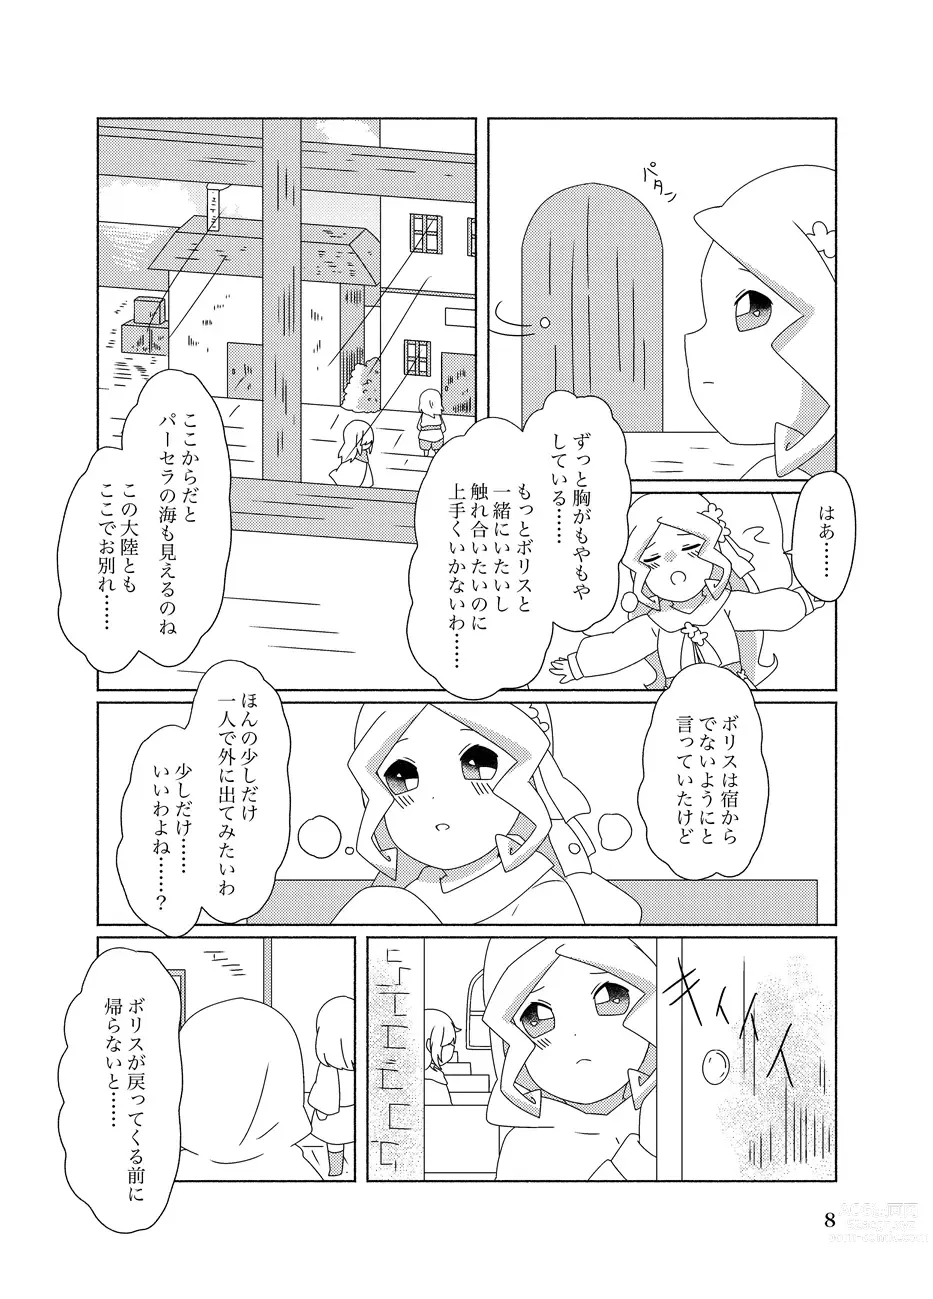 Page 8 of doujinshi Hachimitsu Sake to Milk